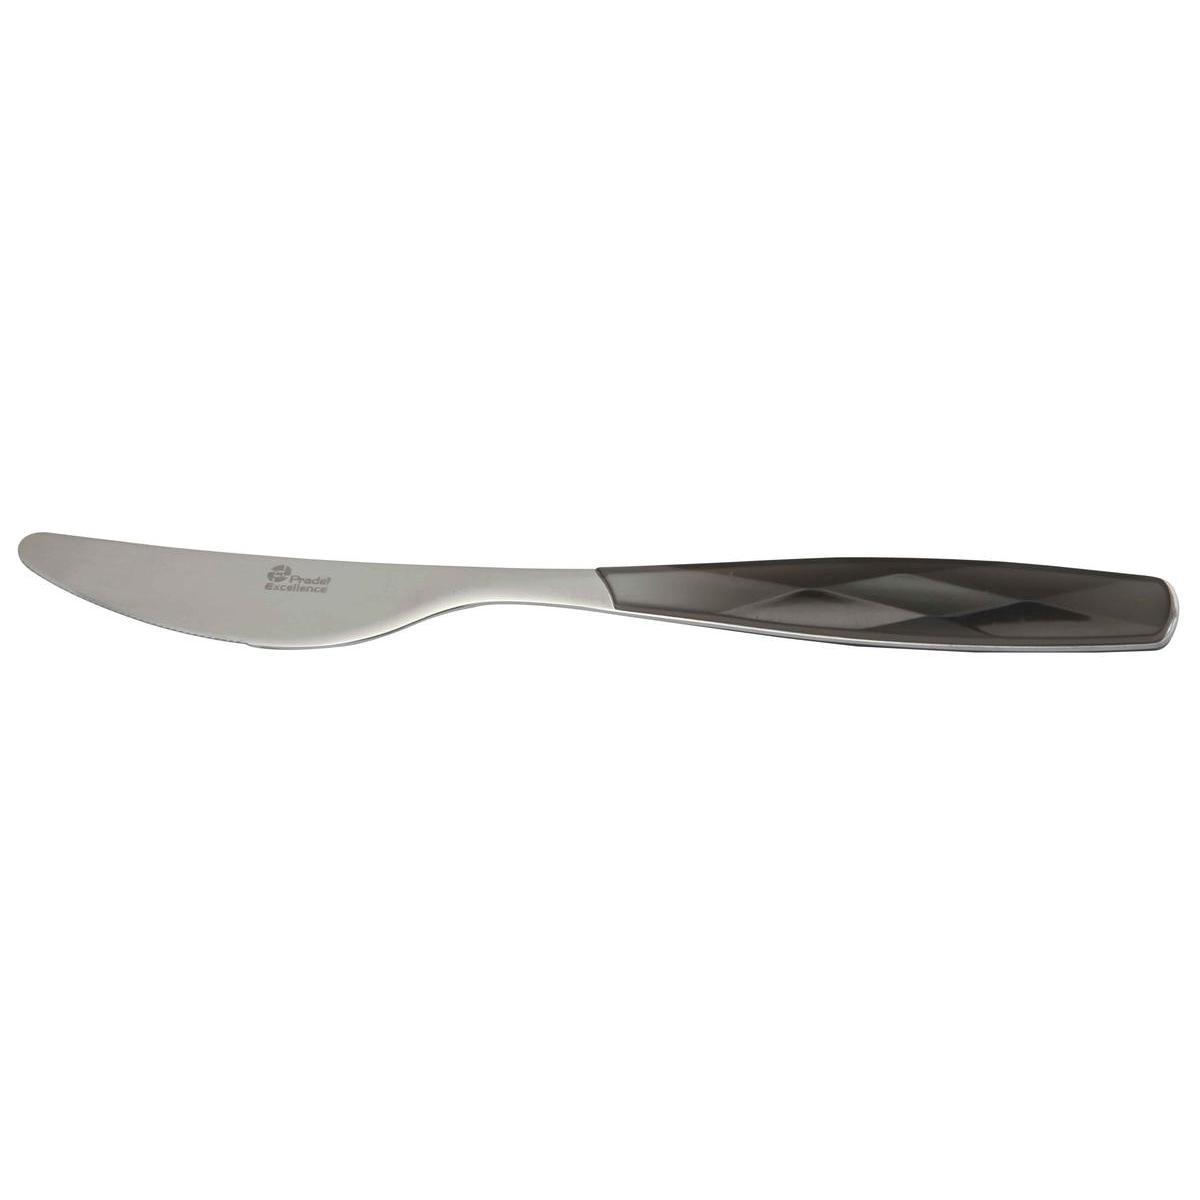 Couteau de table excellence - Acier inoxydable - 22,5 cm - Gris